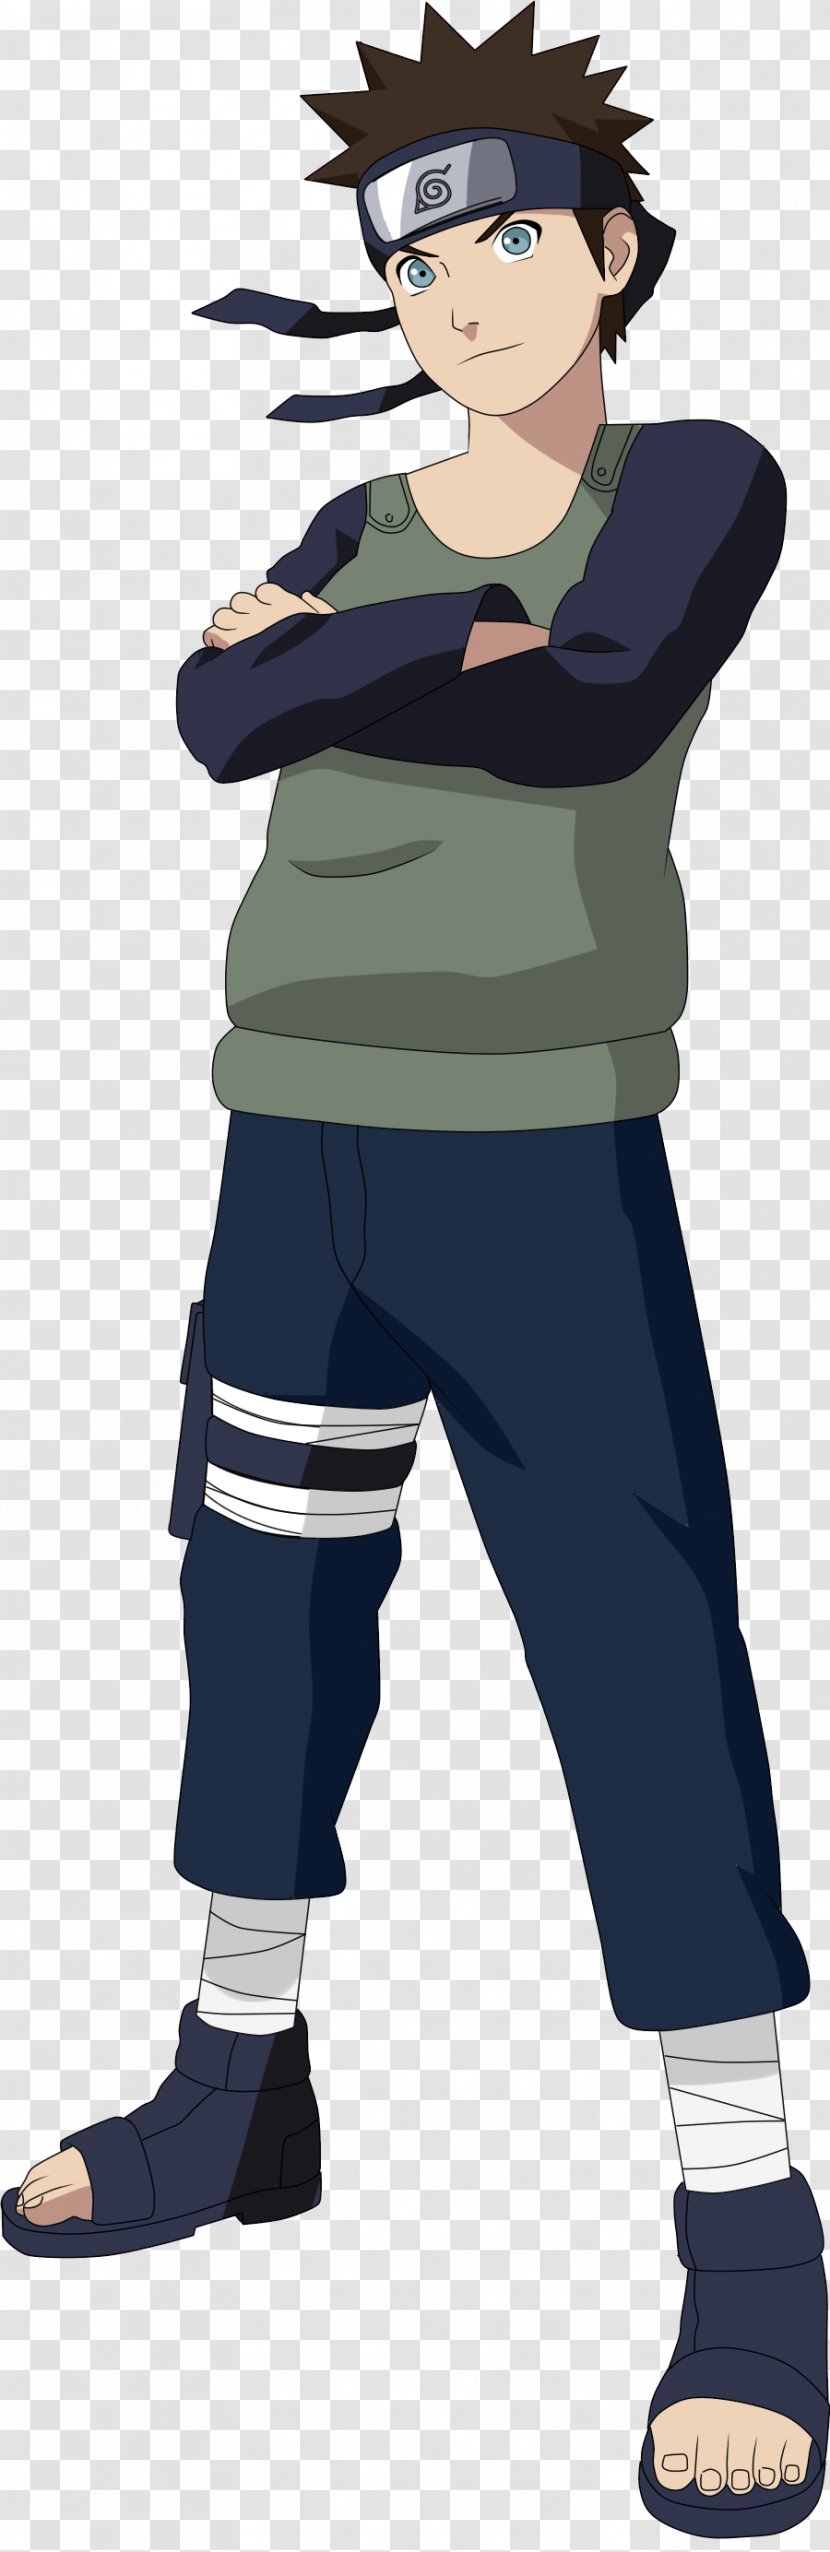 Kakashi Hatake Naruto Uzumaki Sasuke Uchiha Choji Akimichi Shippuden: Ultimate Ninja Storm Generations - Tree - Goku Transparent PNG